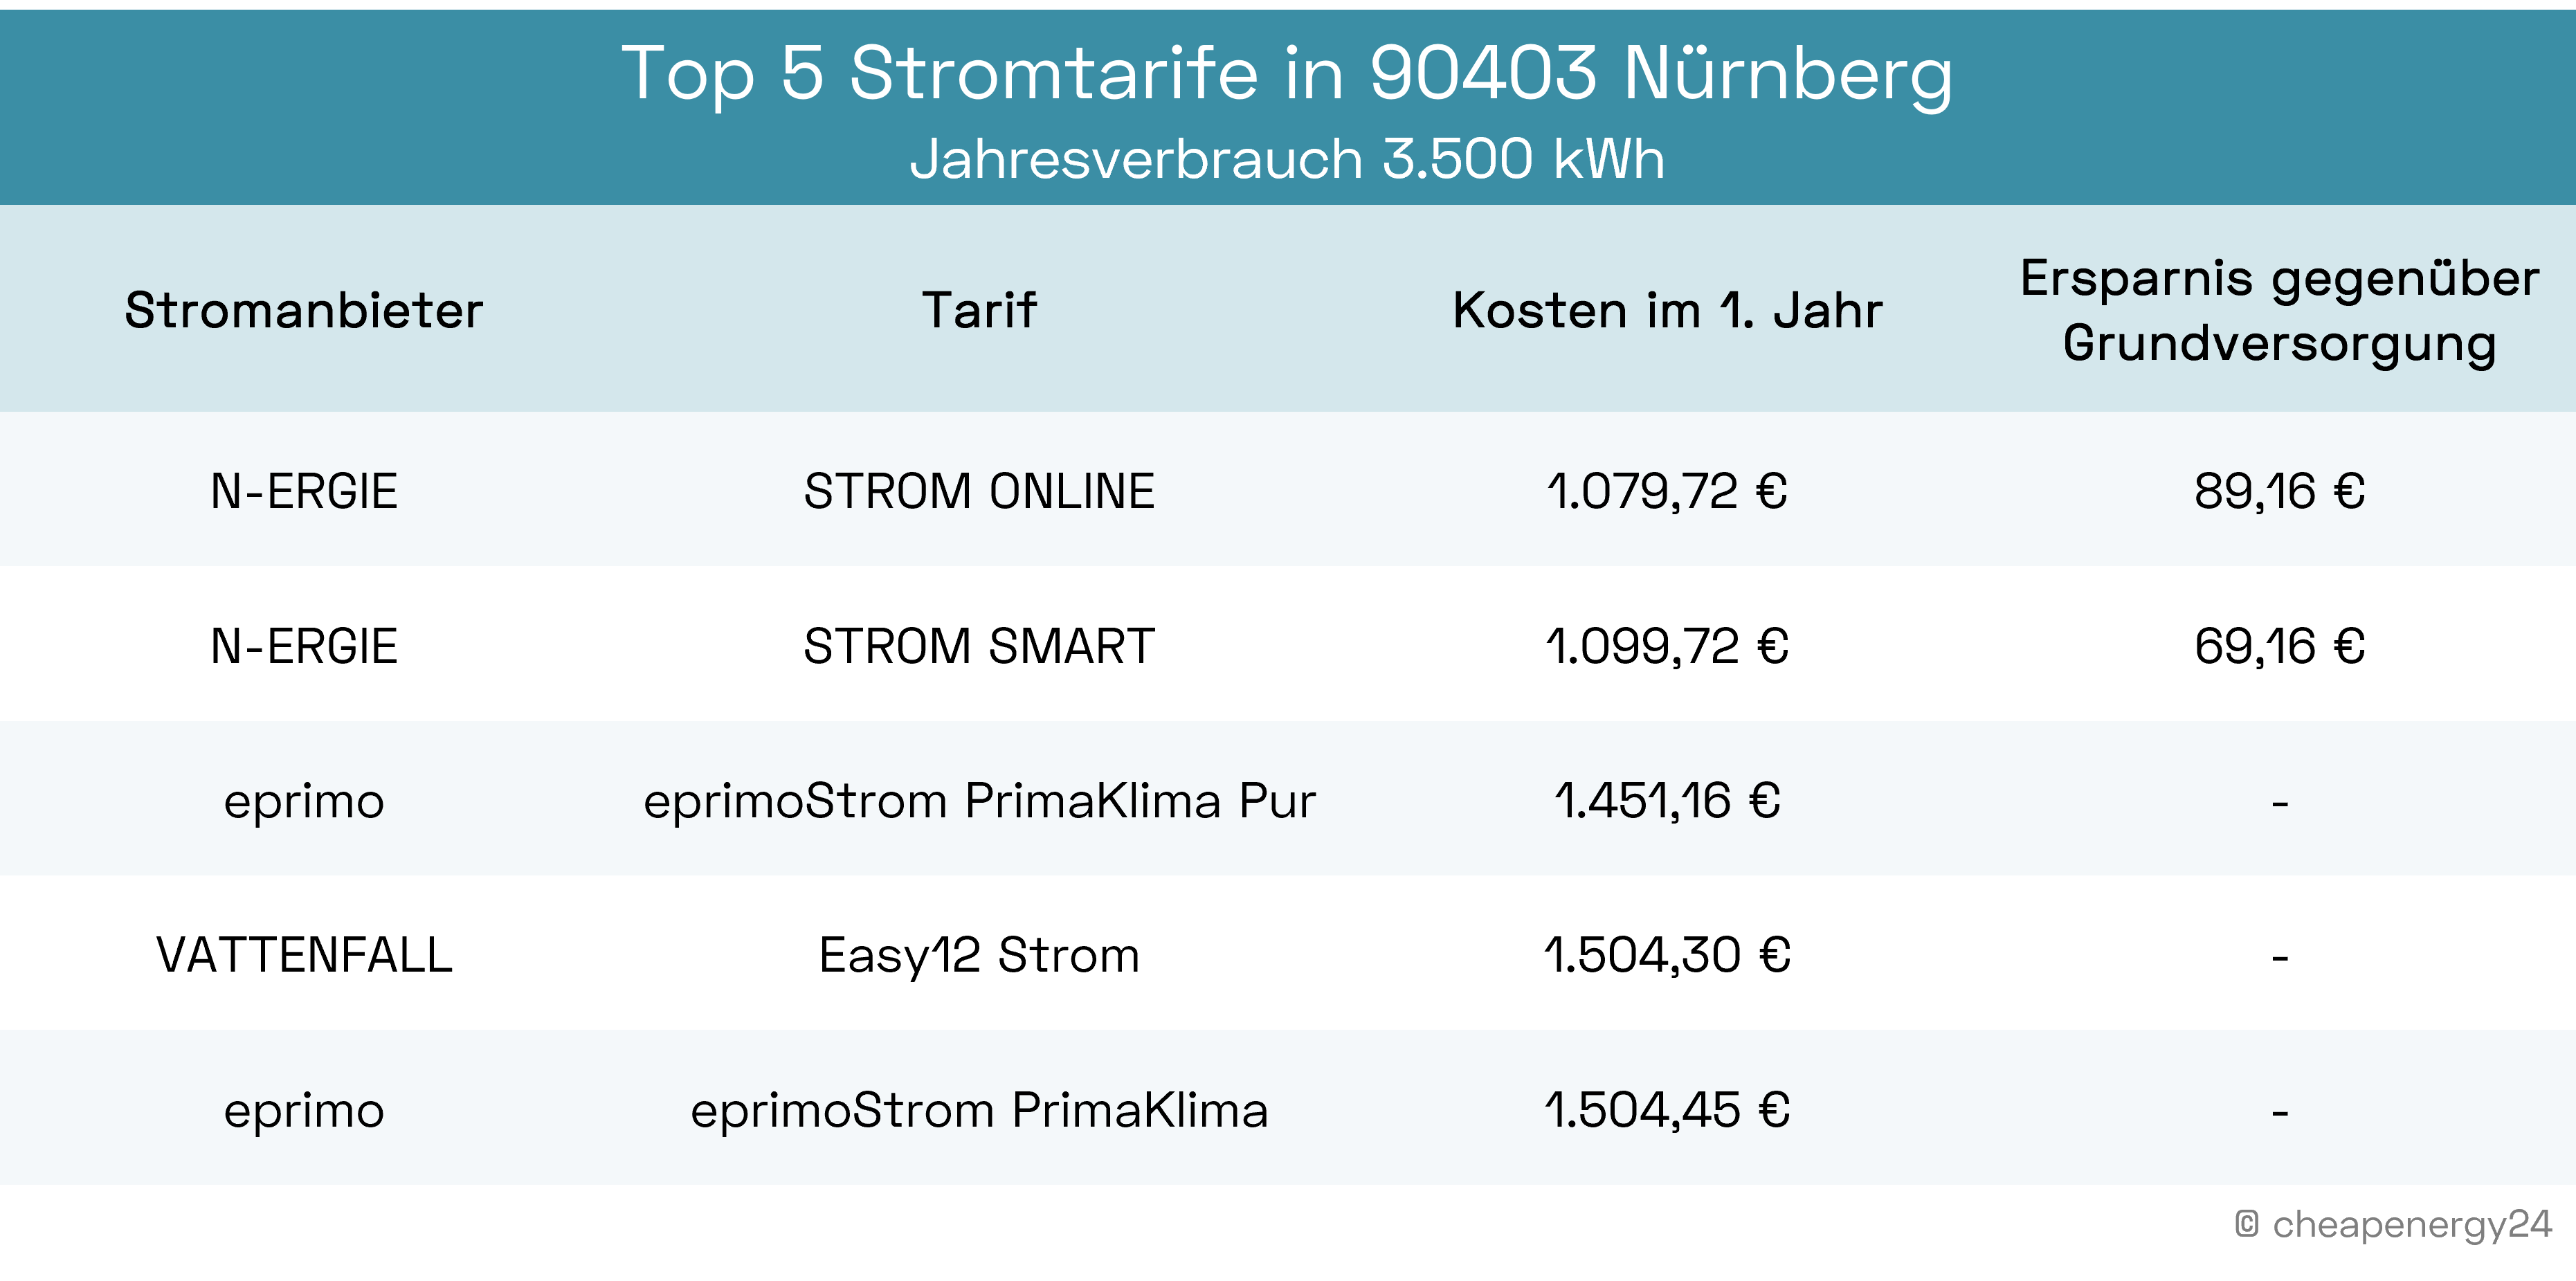 Top 5 Stromtarife Nürnberg